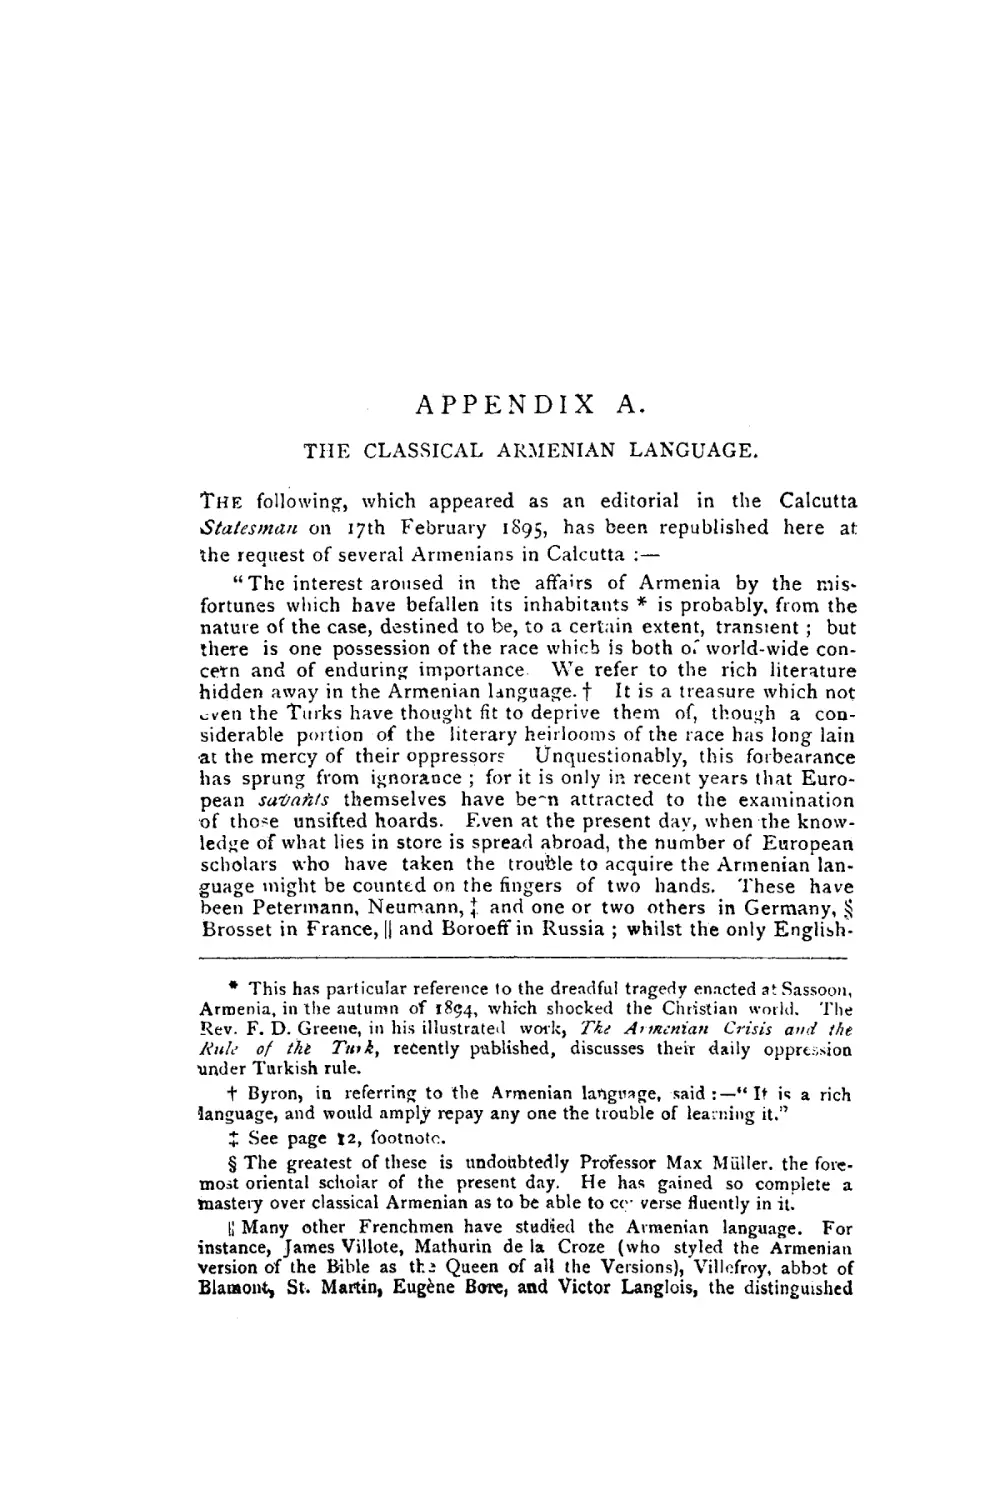 APPENDICES
APPENDIX A. THE CLASSICAL ARMENIAN LANGUAGE